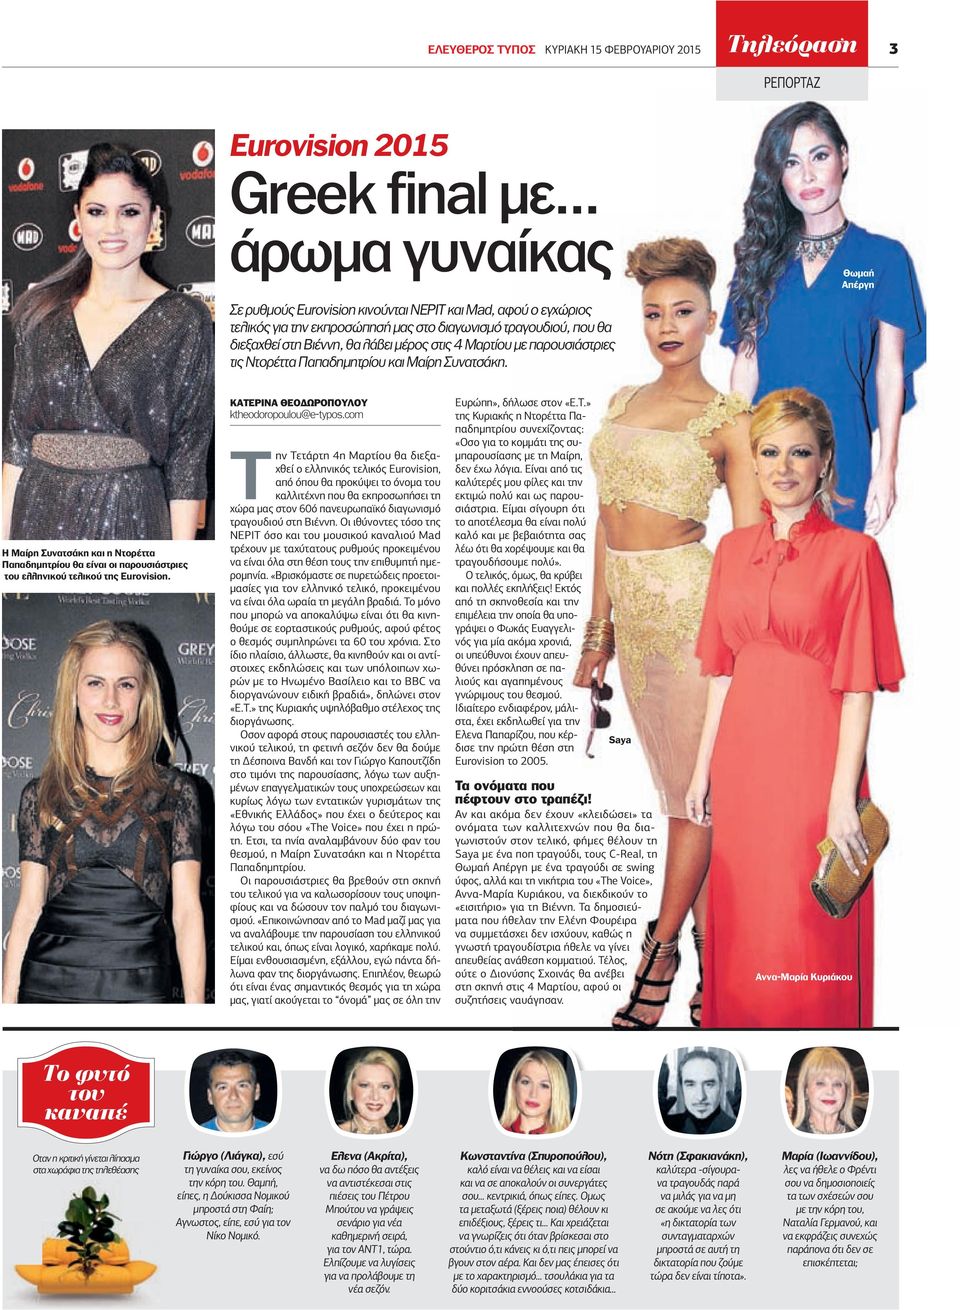 στις 4 Μαρτίου µε παρουσιάστριες τις Ντορέττα Παπαδηµητρίου και Μαίρη Συνατσάκη. Η Μαίρη Συνατσάκη και η Ντορέττα Παπαδηµητρίου θα είναι οι παρουσιάστριες του ελληνικού τελικού της Eurovision.